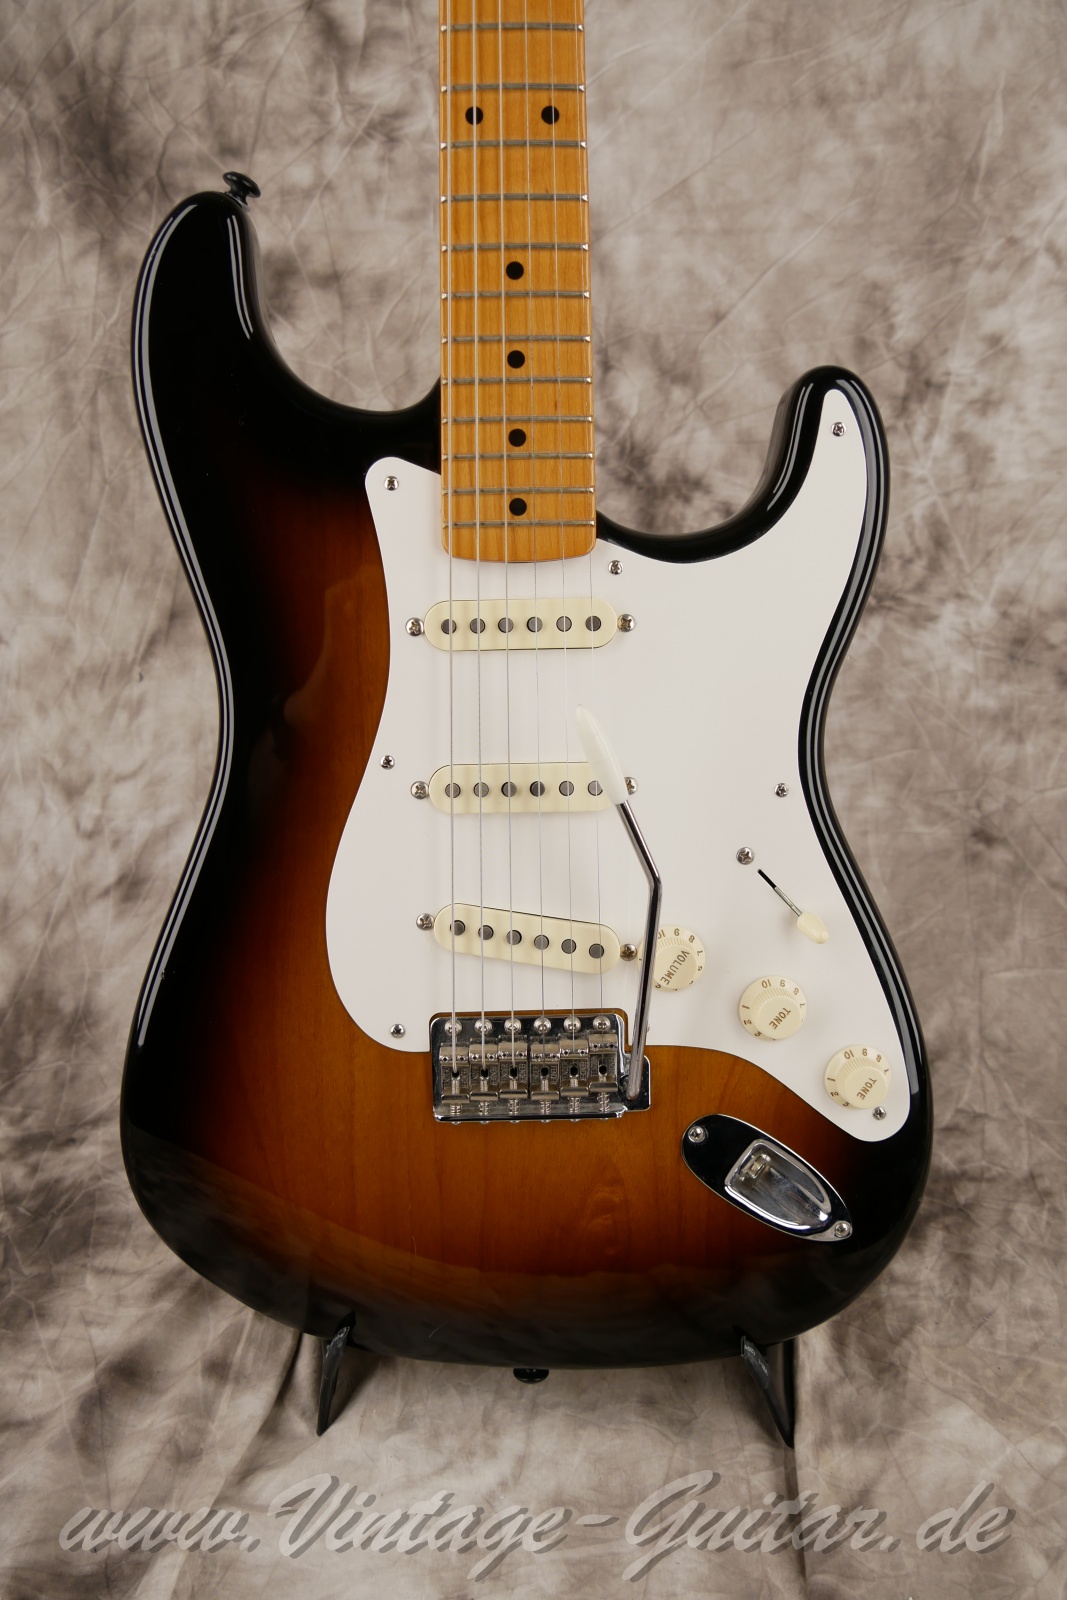 Fener-Stratocaster-Classic-player-series-50s-2007-sunburst-007.jpg